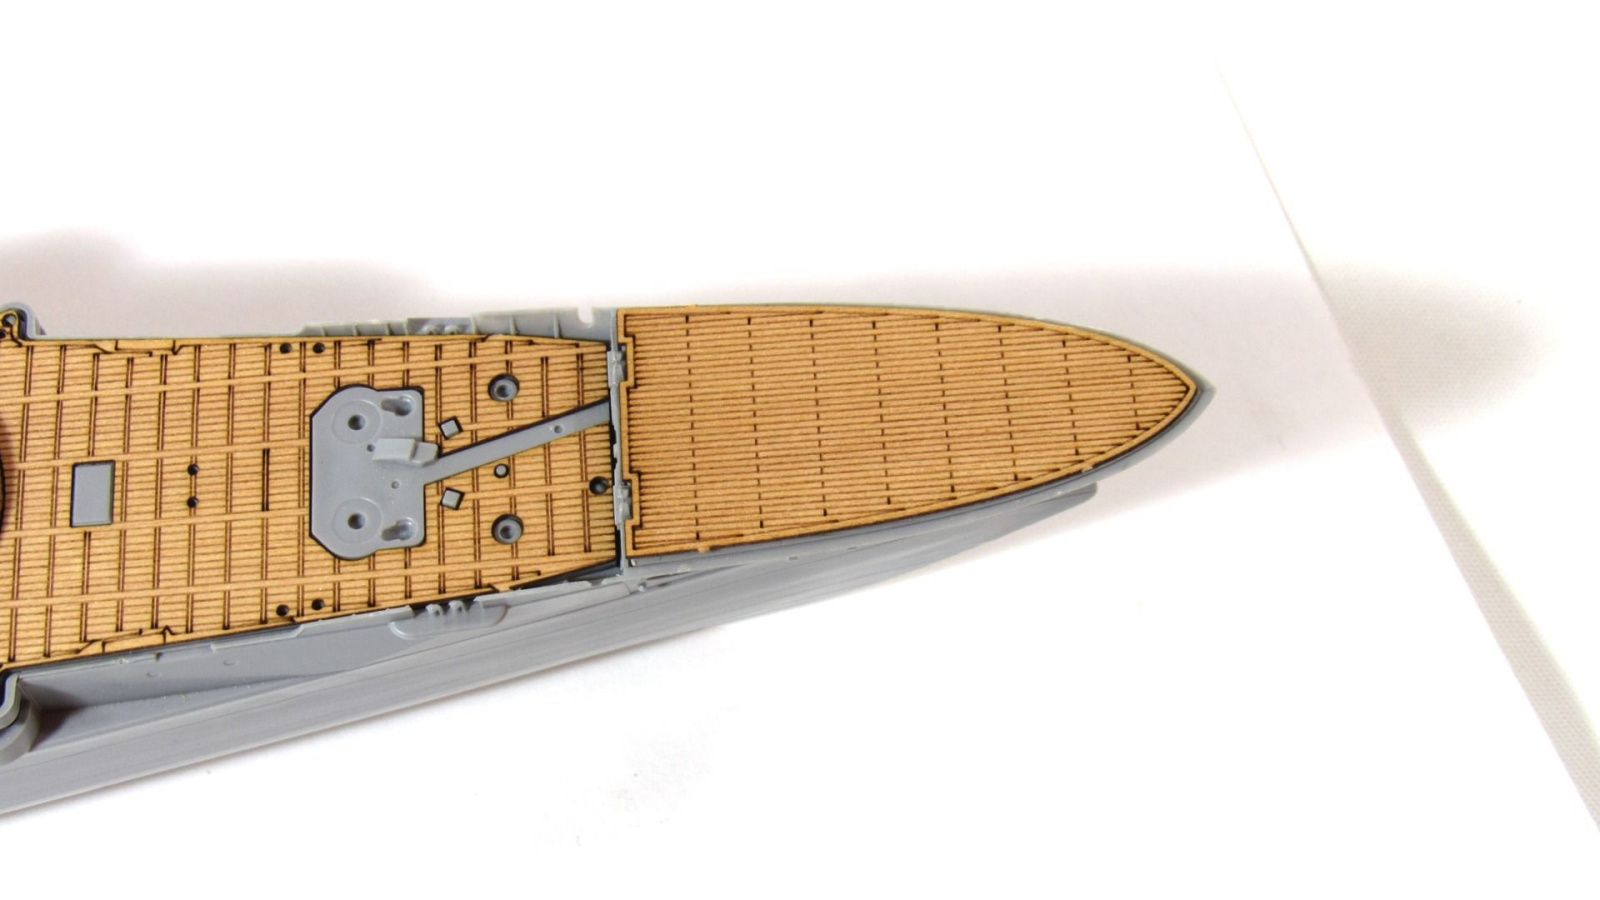 Deck of the battleship "Marat" - imodeller.store